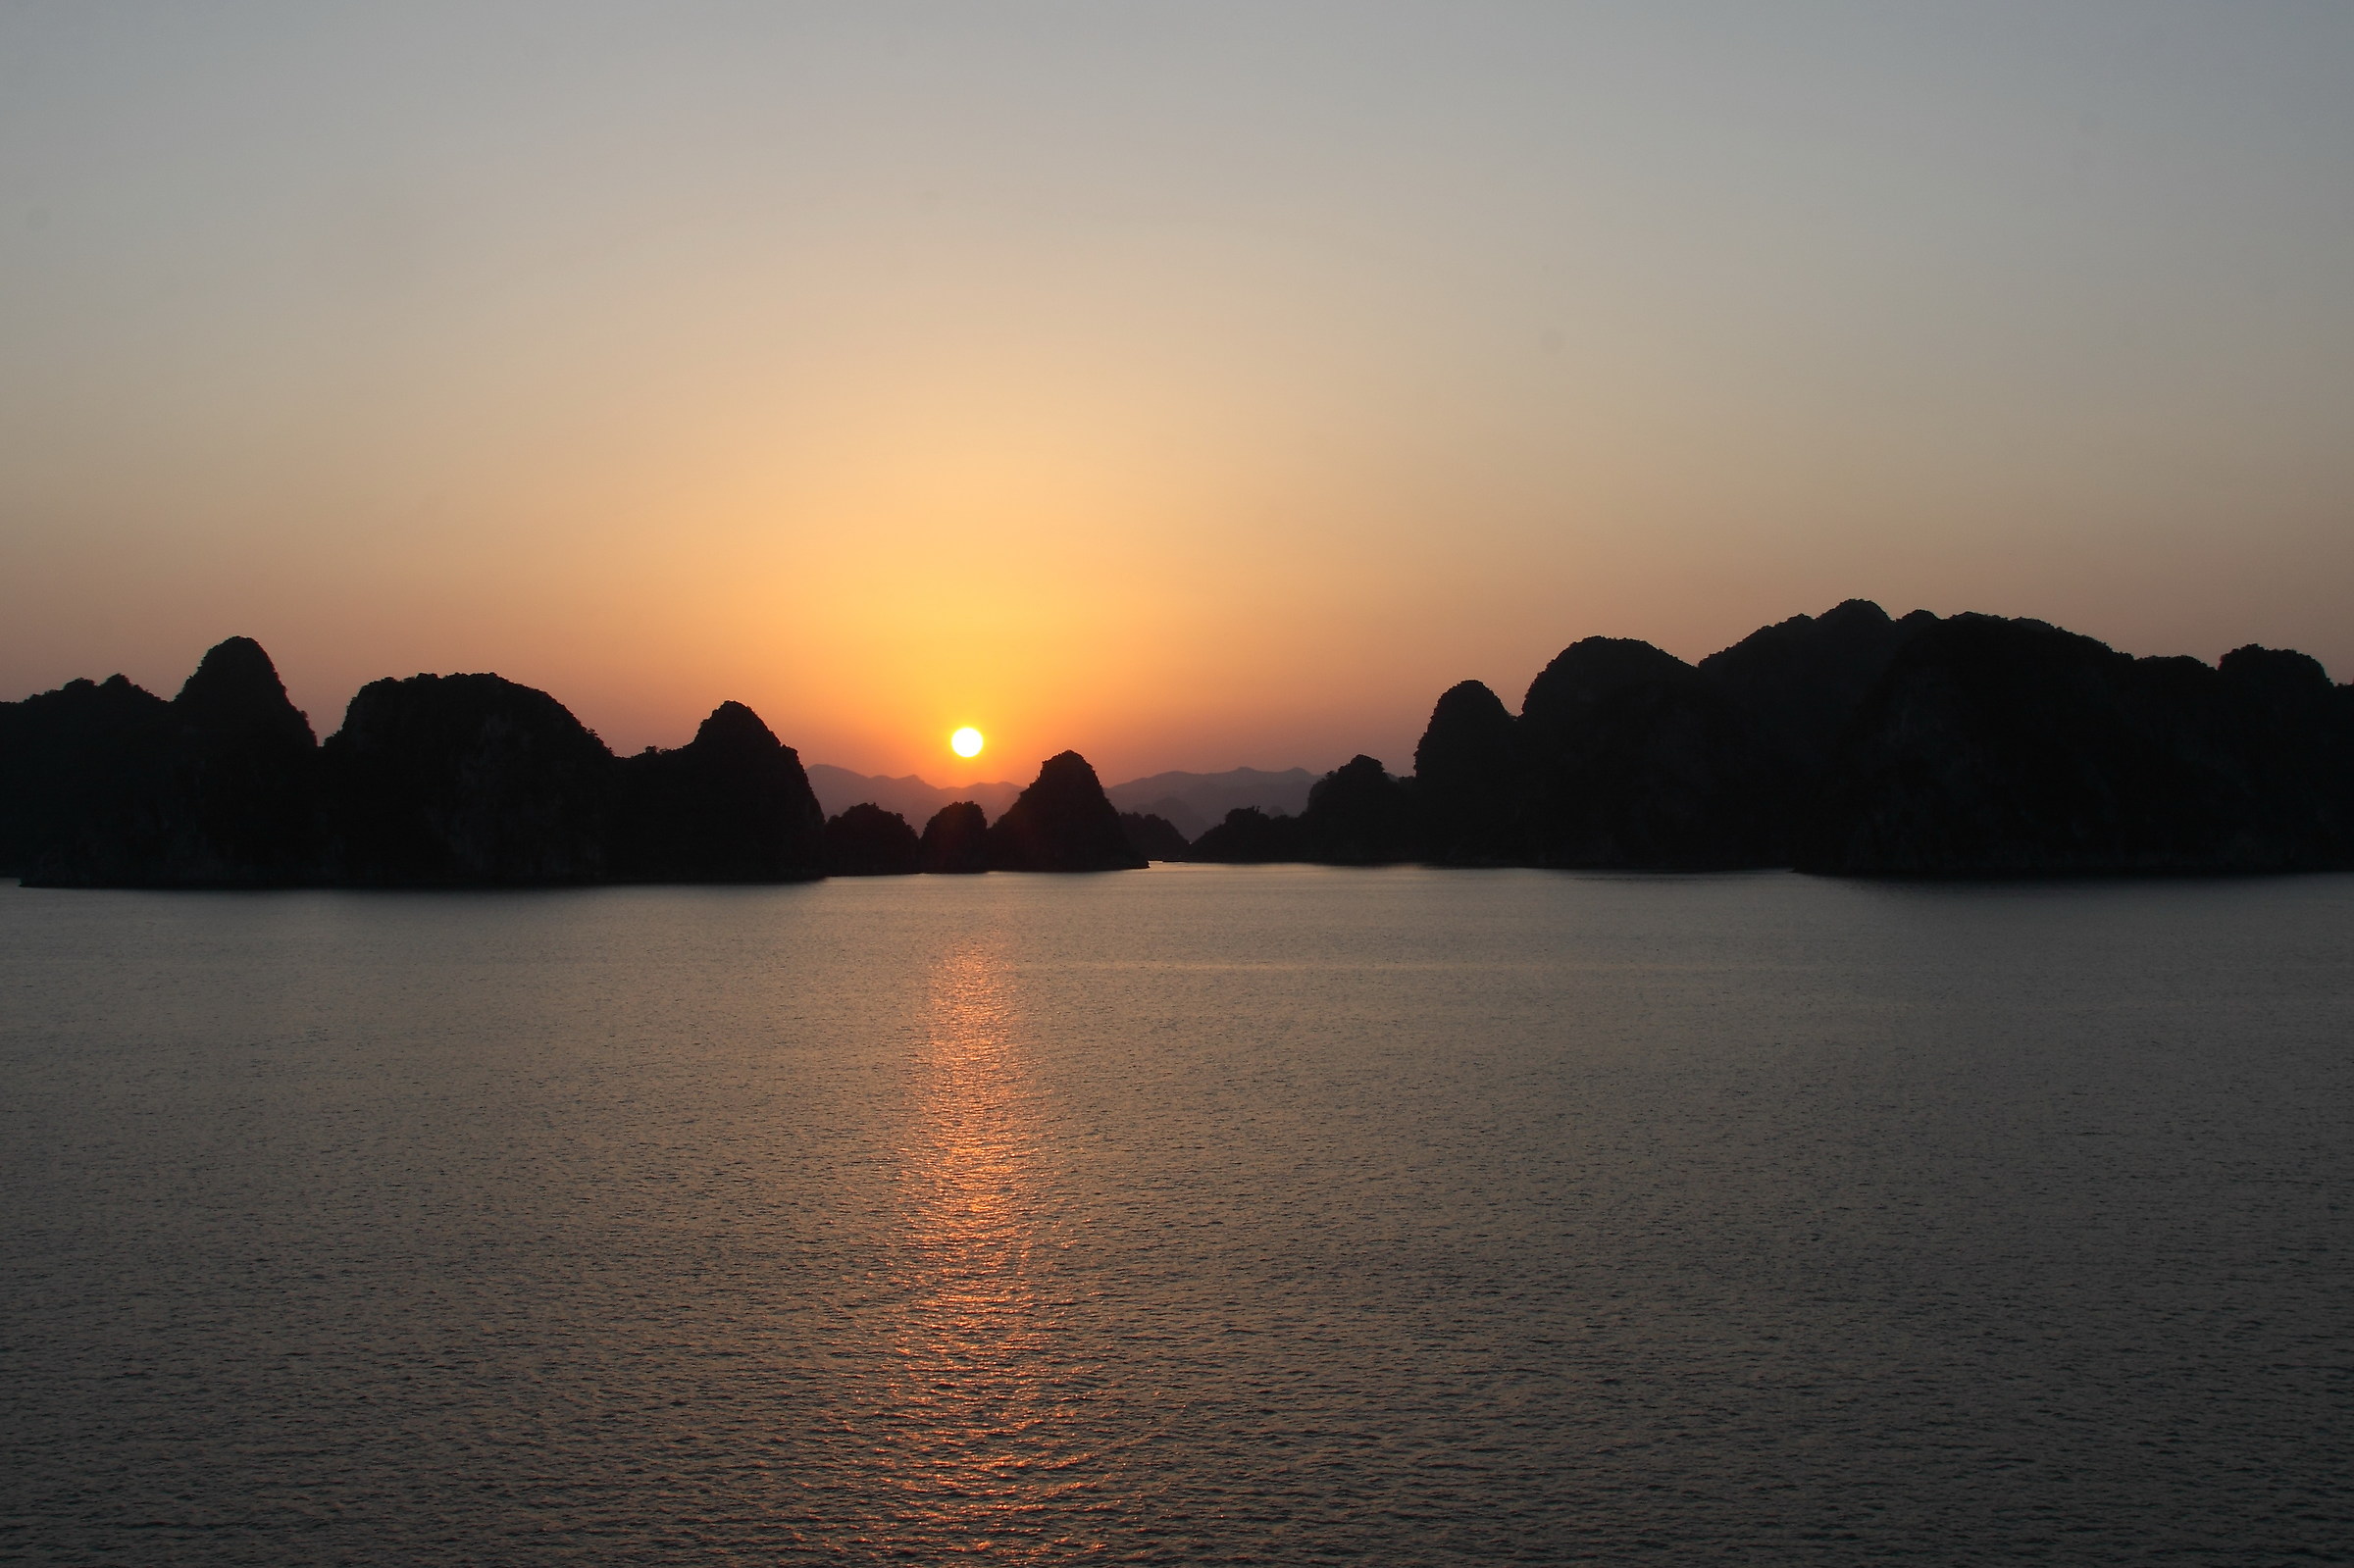 A sunset on Halong Bay, Vietnam...